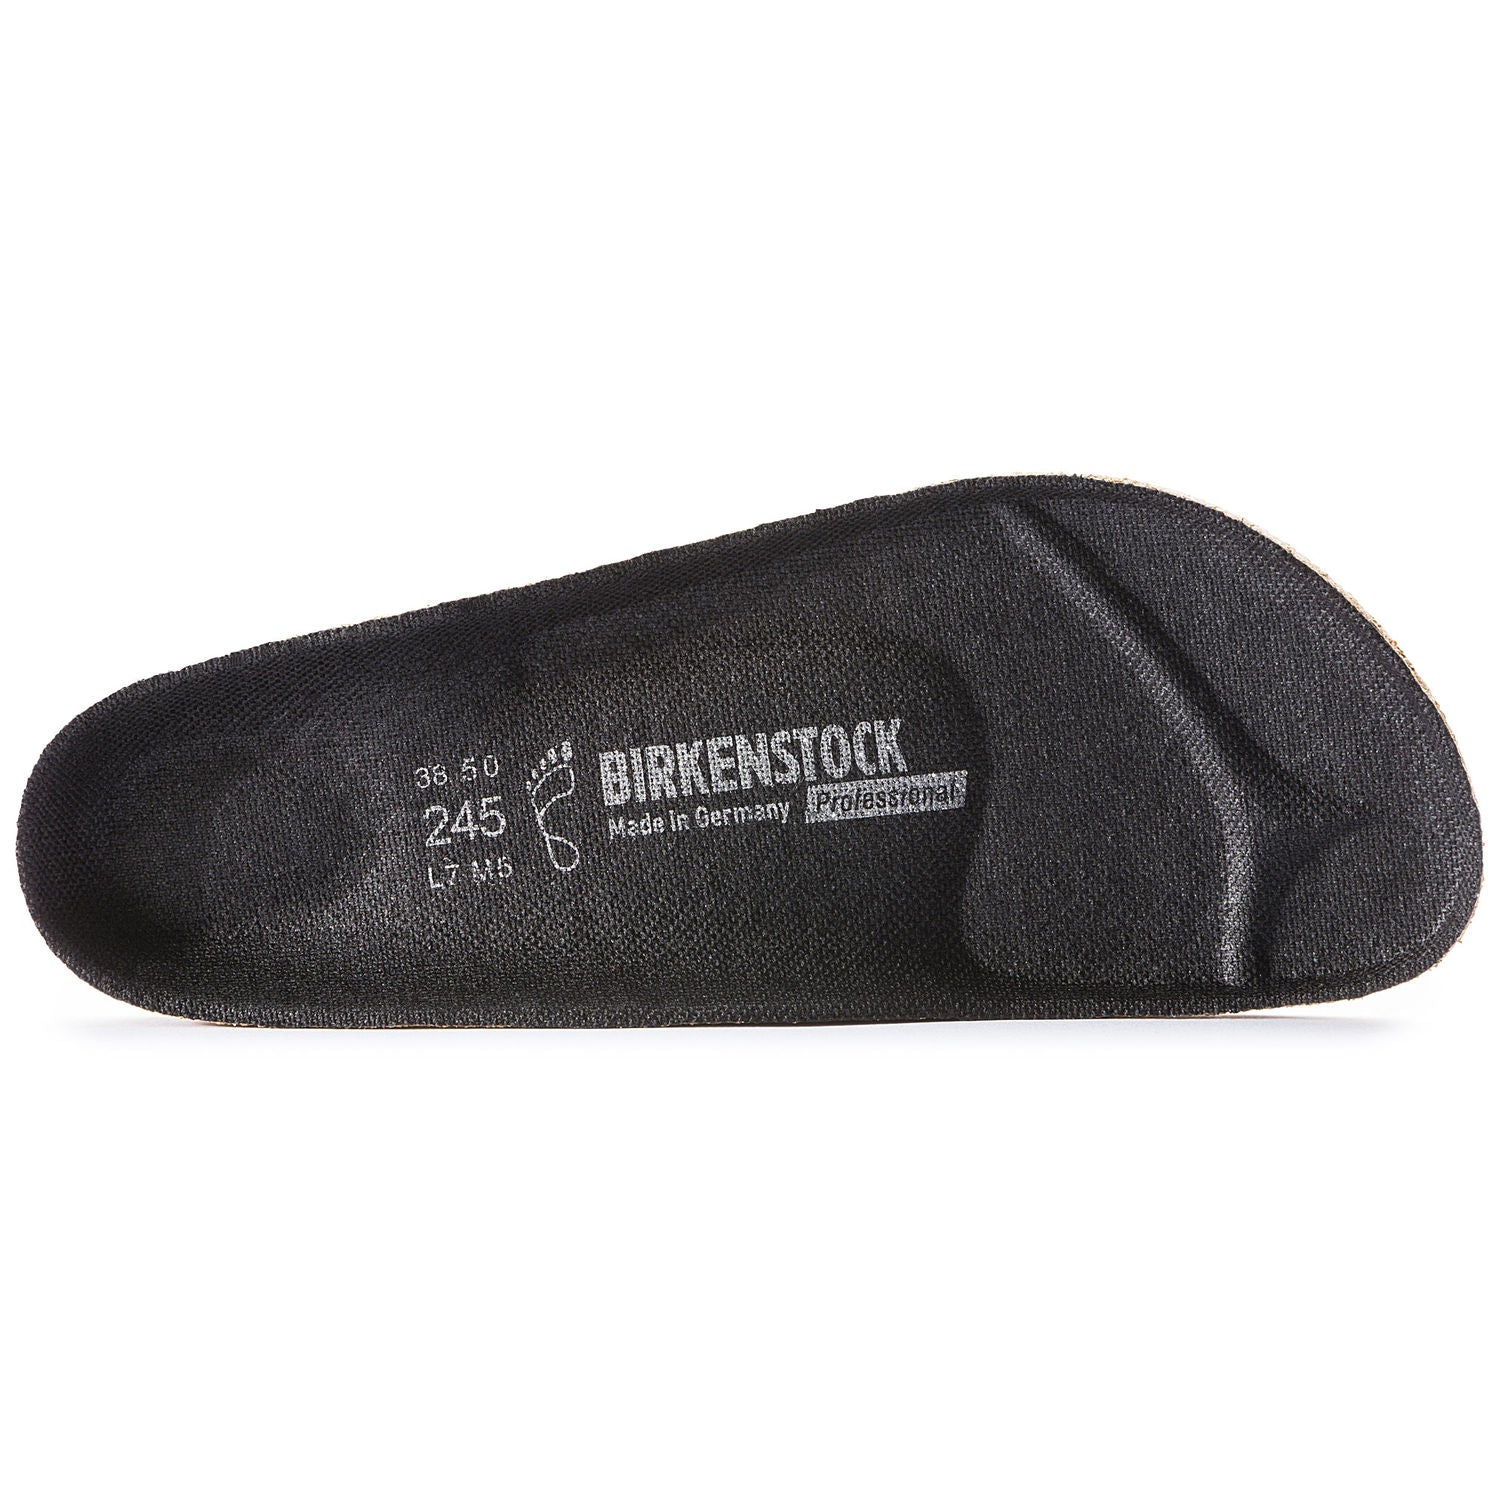 birkenstock cork replacement footbed